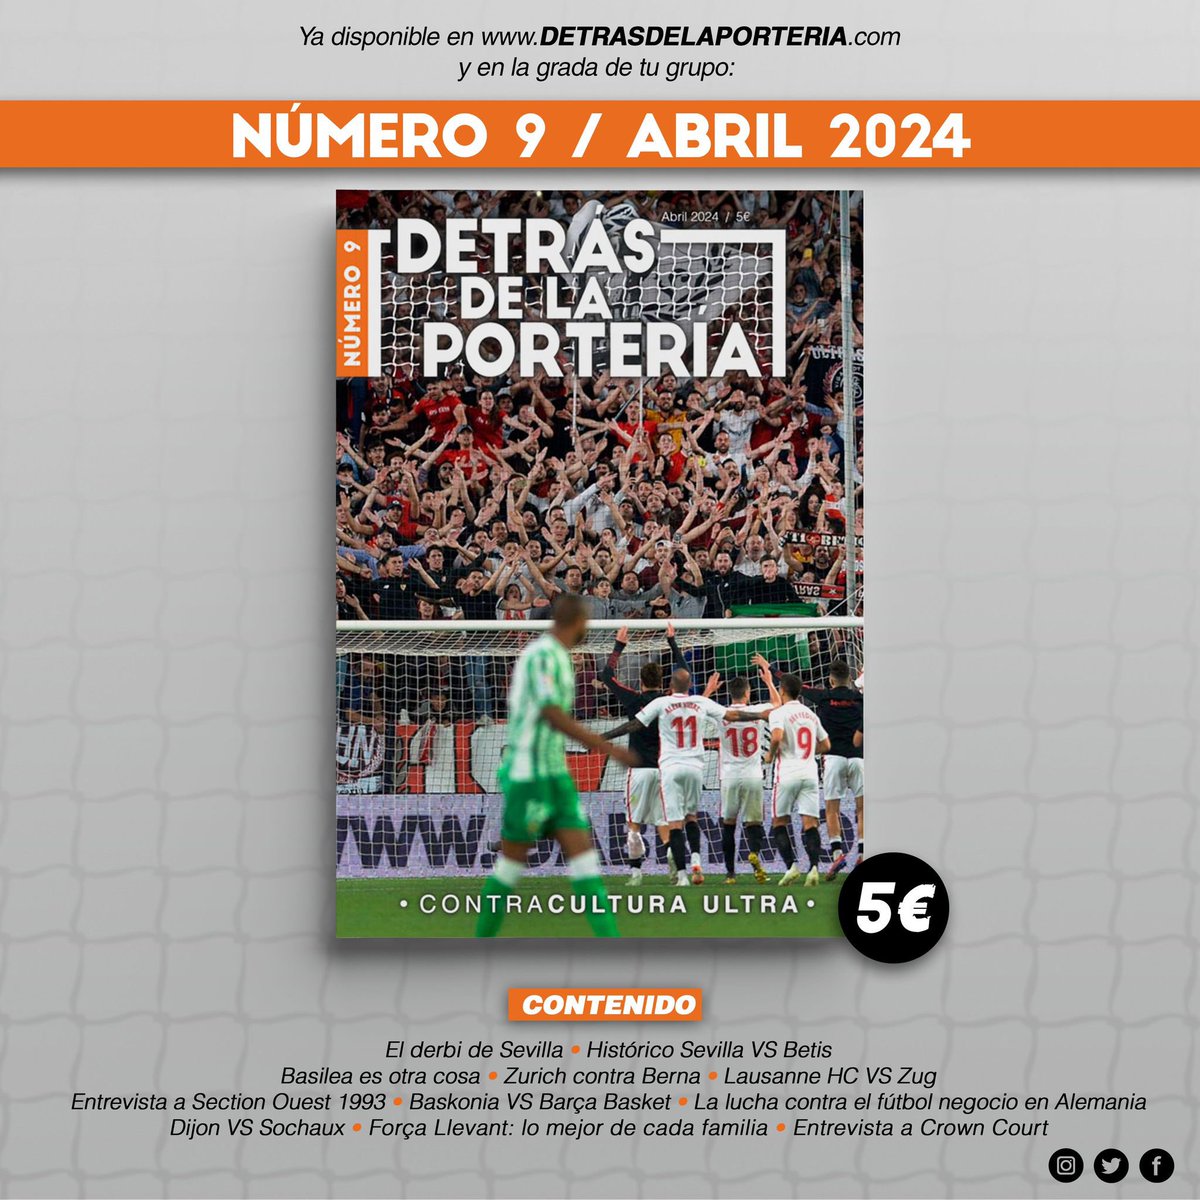 Seguimos teniendo @DetrasPorteria con participación del grupo en el repaso de parte de la historia futbolera de nuestra ciudad. ¡No te quedes sin tu revista!